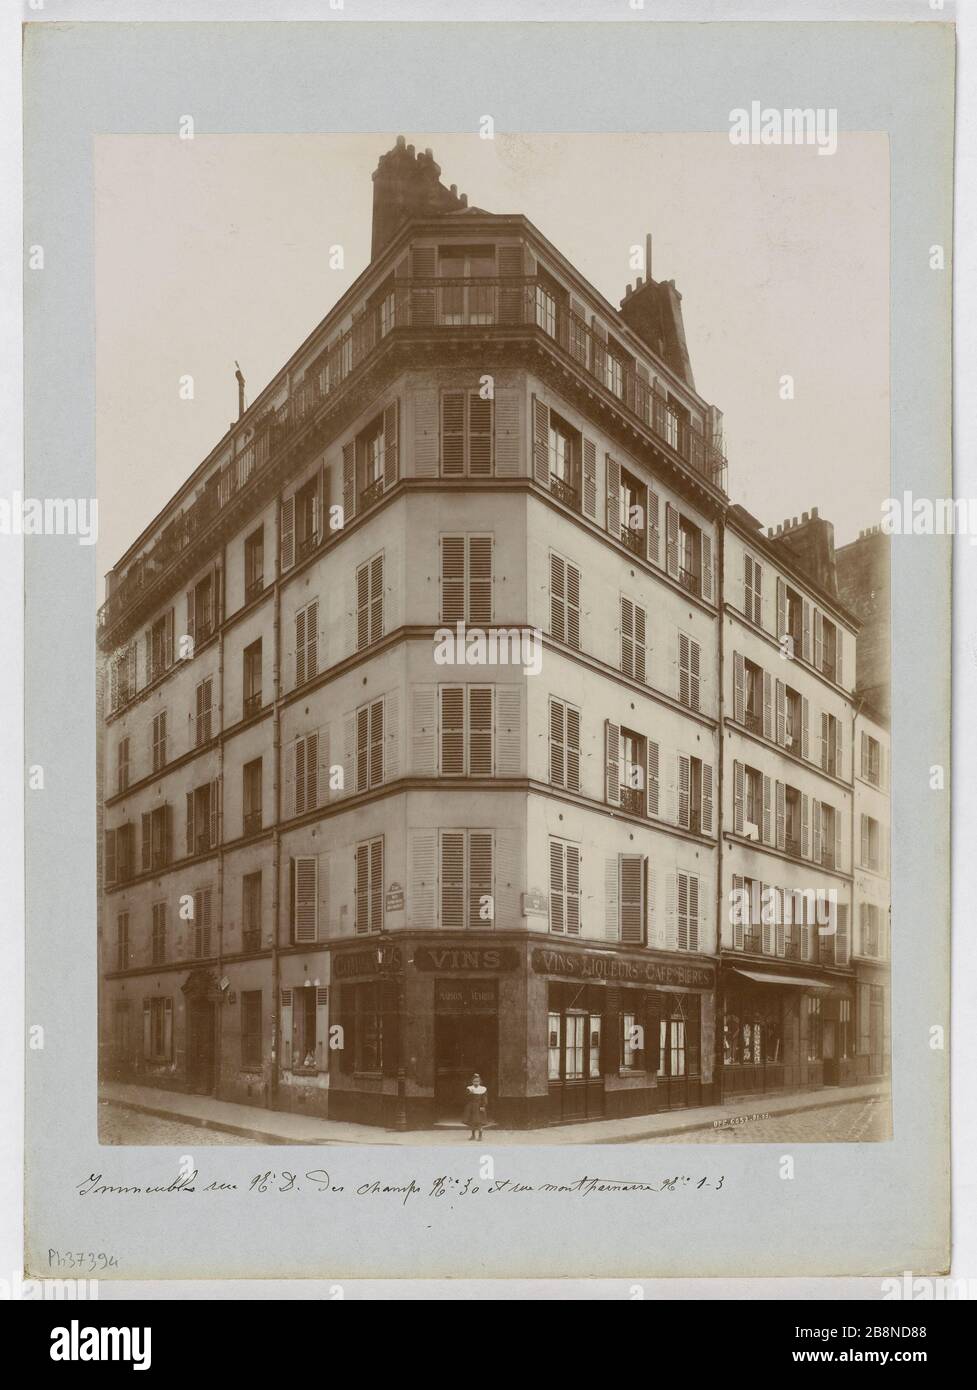 BUILDING, THE ANGLE OF 30 NOTRE-DAME-DES-CHAMPS AND MONTPARNASSE 1-3  STREET, 6TH DISTRICT, PARIS Immeuble, à l'angle du 30 rue Notre-Dame-des-Champs  et du 1-3 rue Montparnasse, Paris (VIème arr.). 1903 (janvier). Union  Photographique